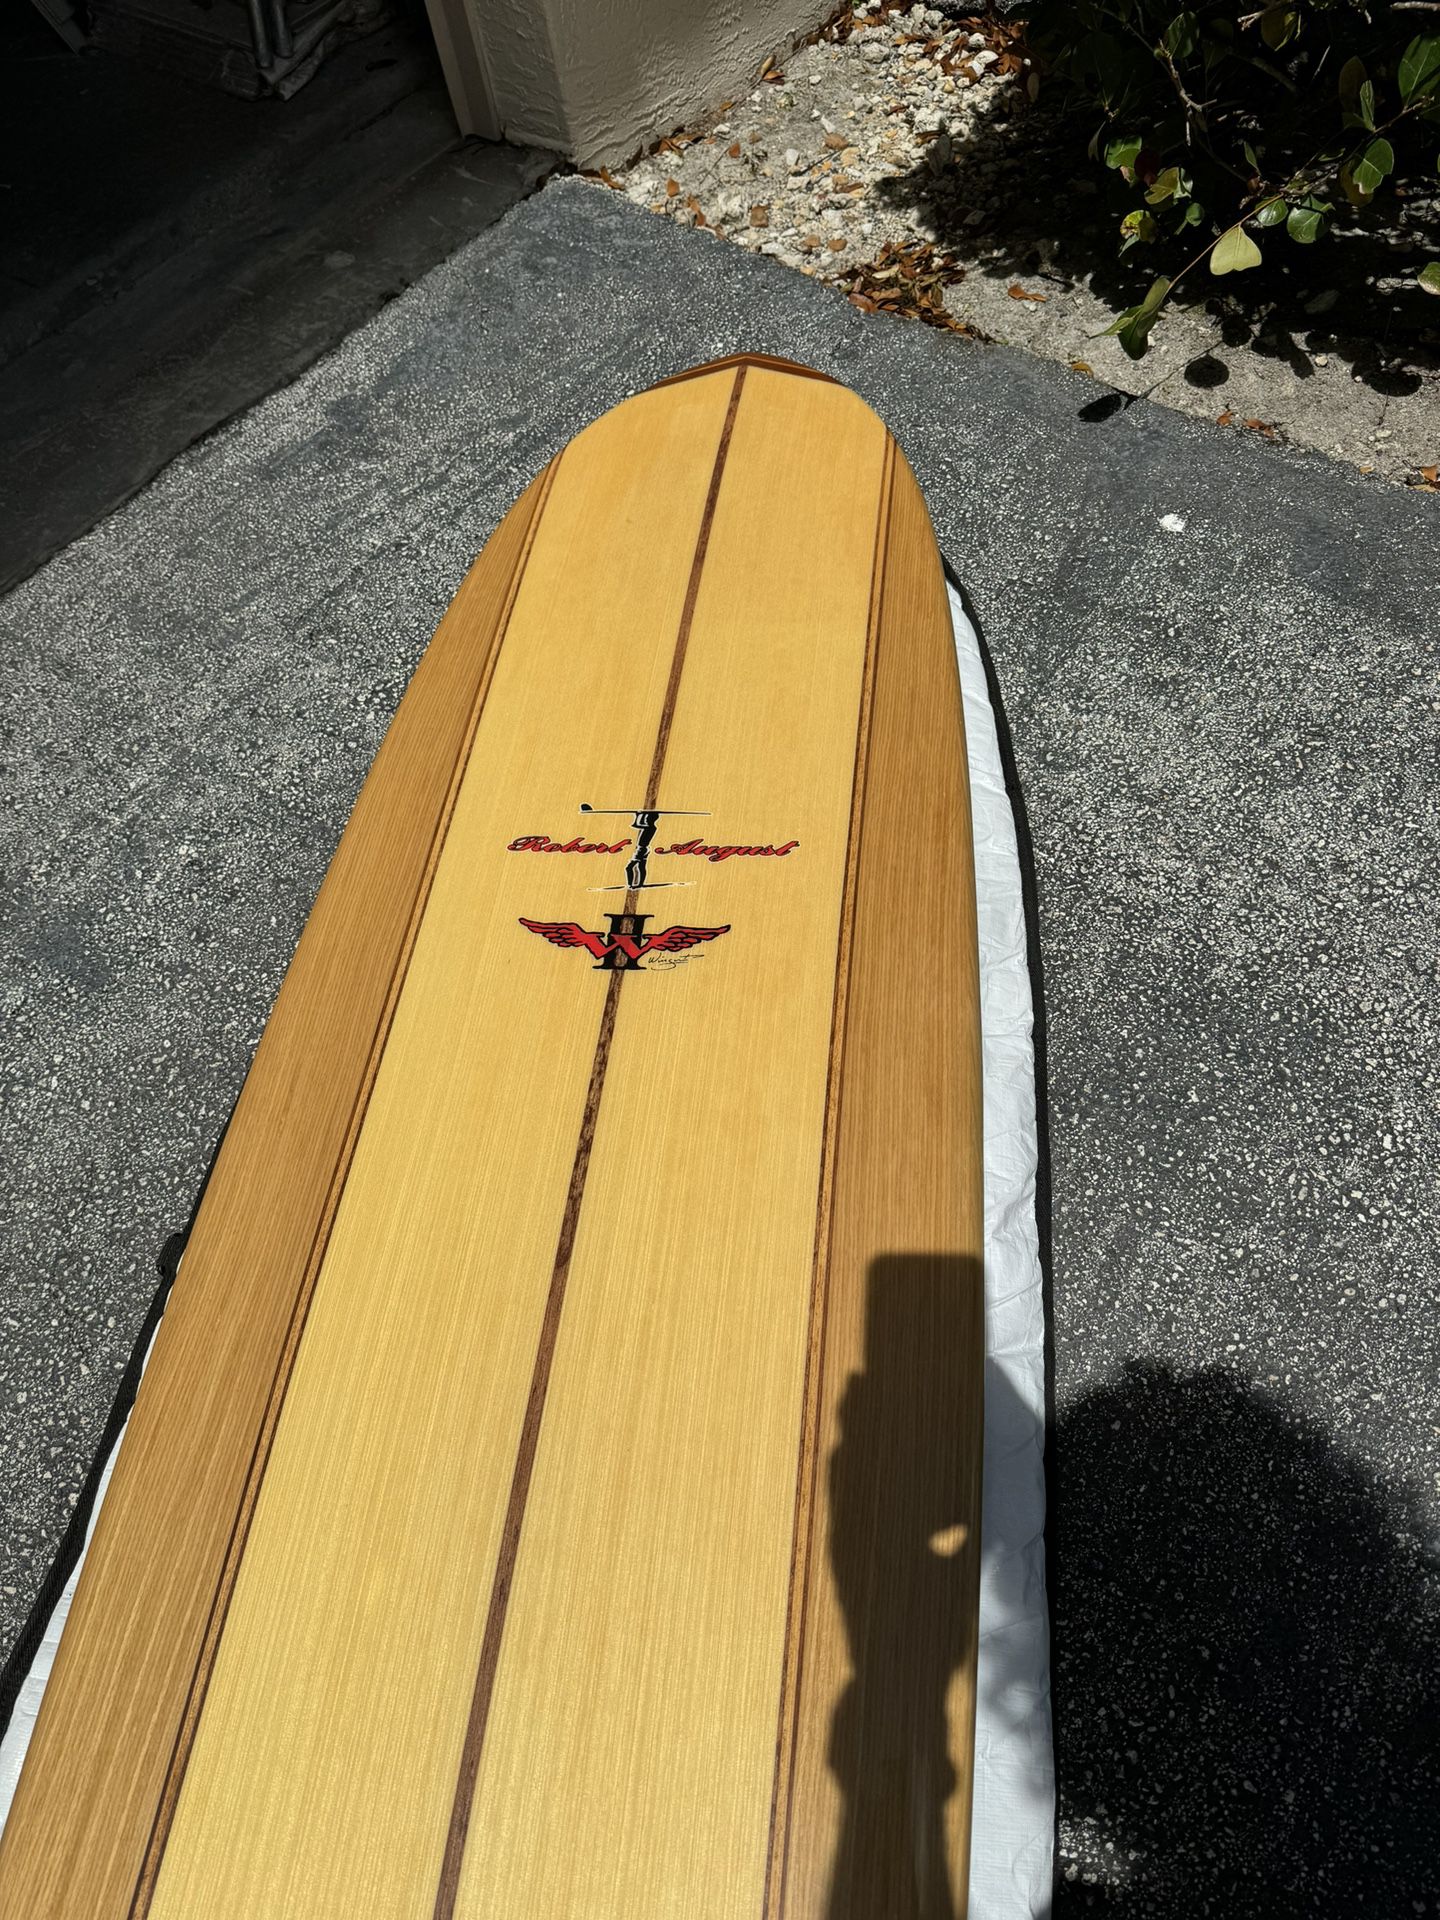 Robert August/Wingnut  wood  9.0 Longboard  New